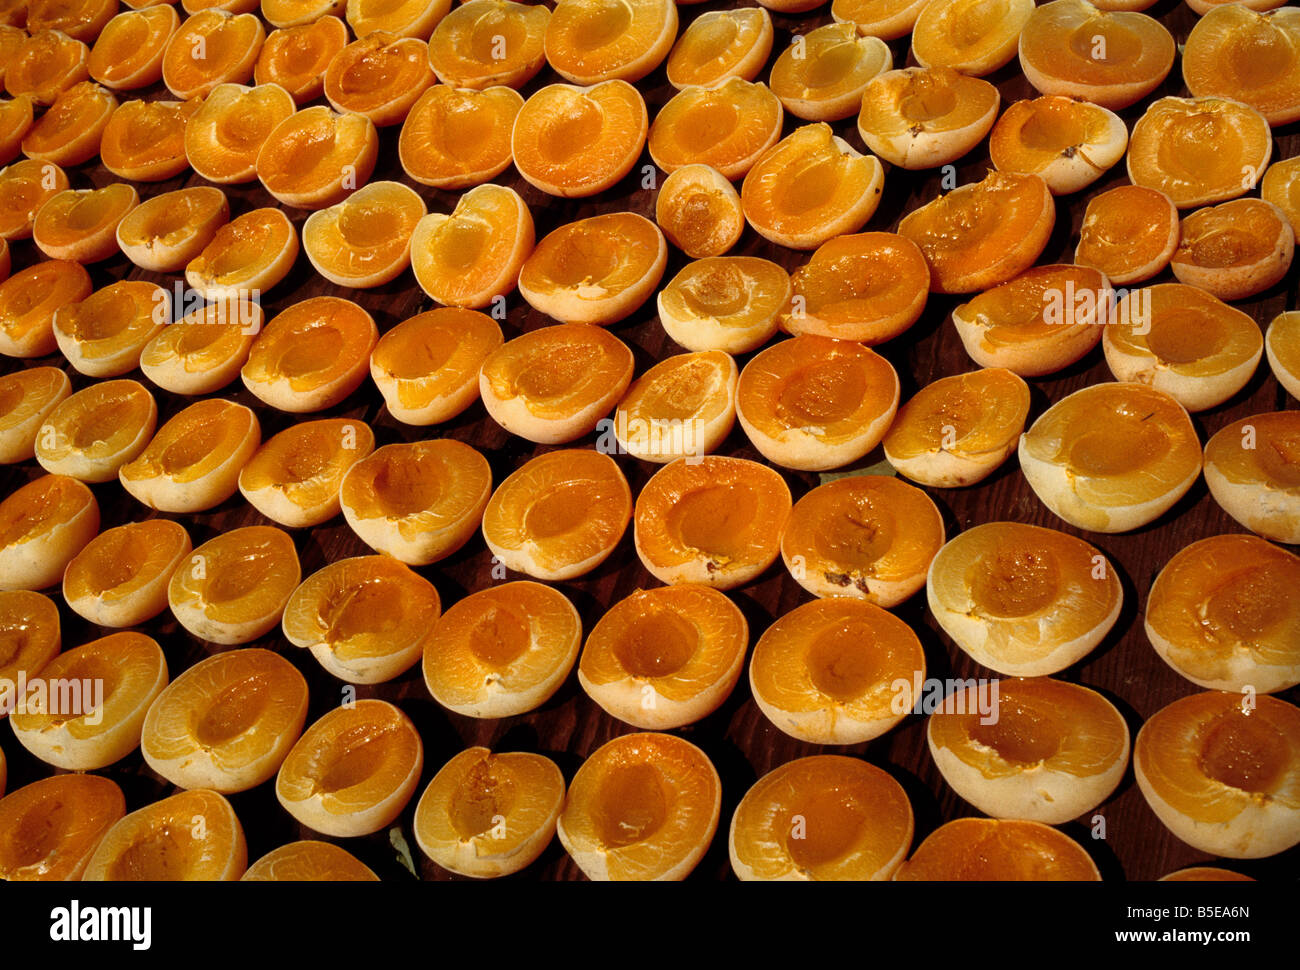 Tagliate a metà le albicocche - sole asciugato con basso tenore di zolfo. Foto Stock